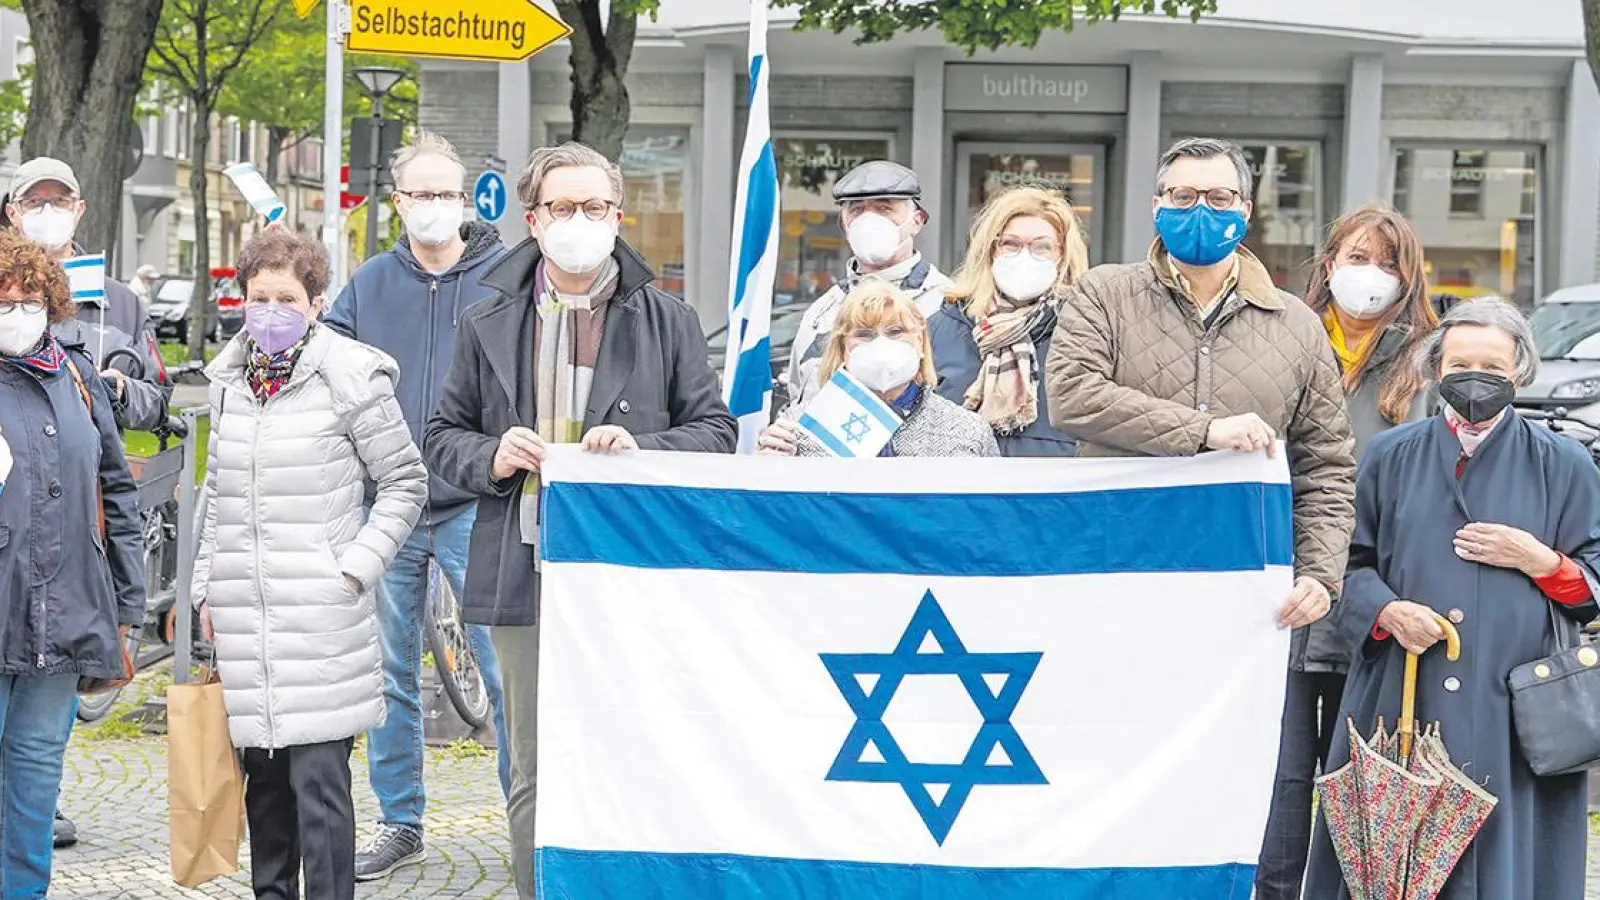 Lokalnachrichten in Bayreuth: Die Vielfalt jüdischen Lebens (Foto: Stefan Dörfler)